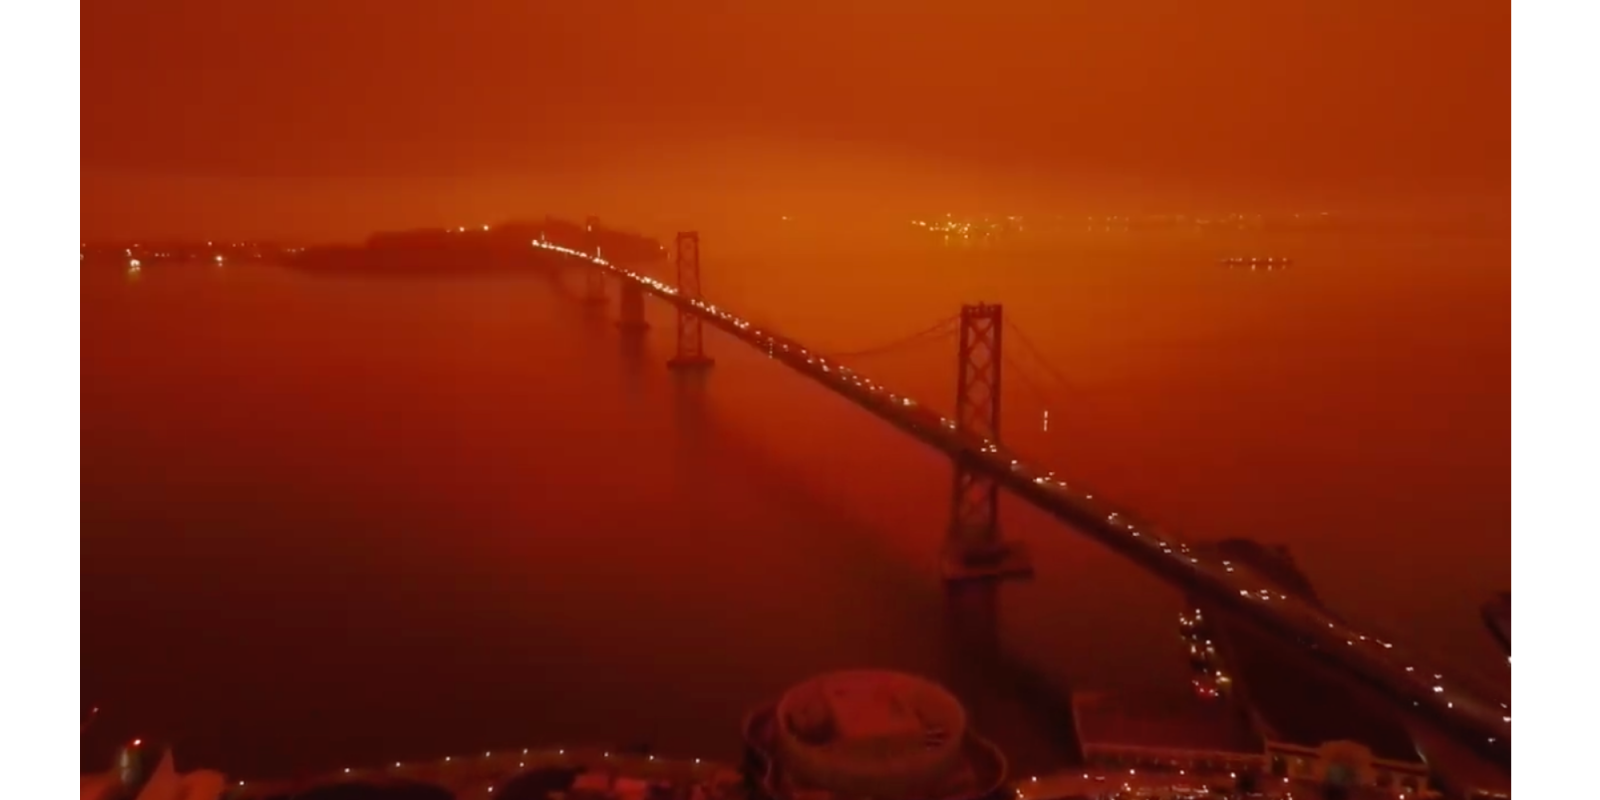 San Francisco Bladerunner fires